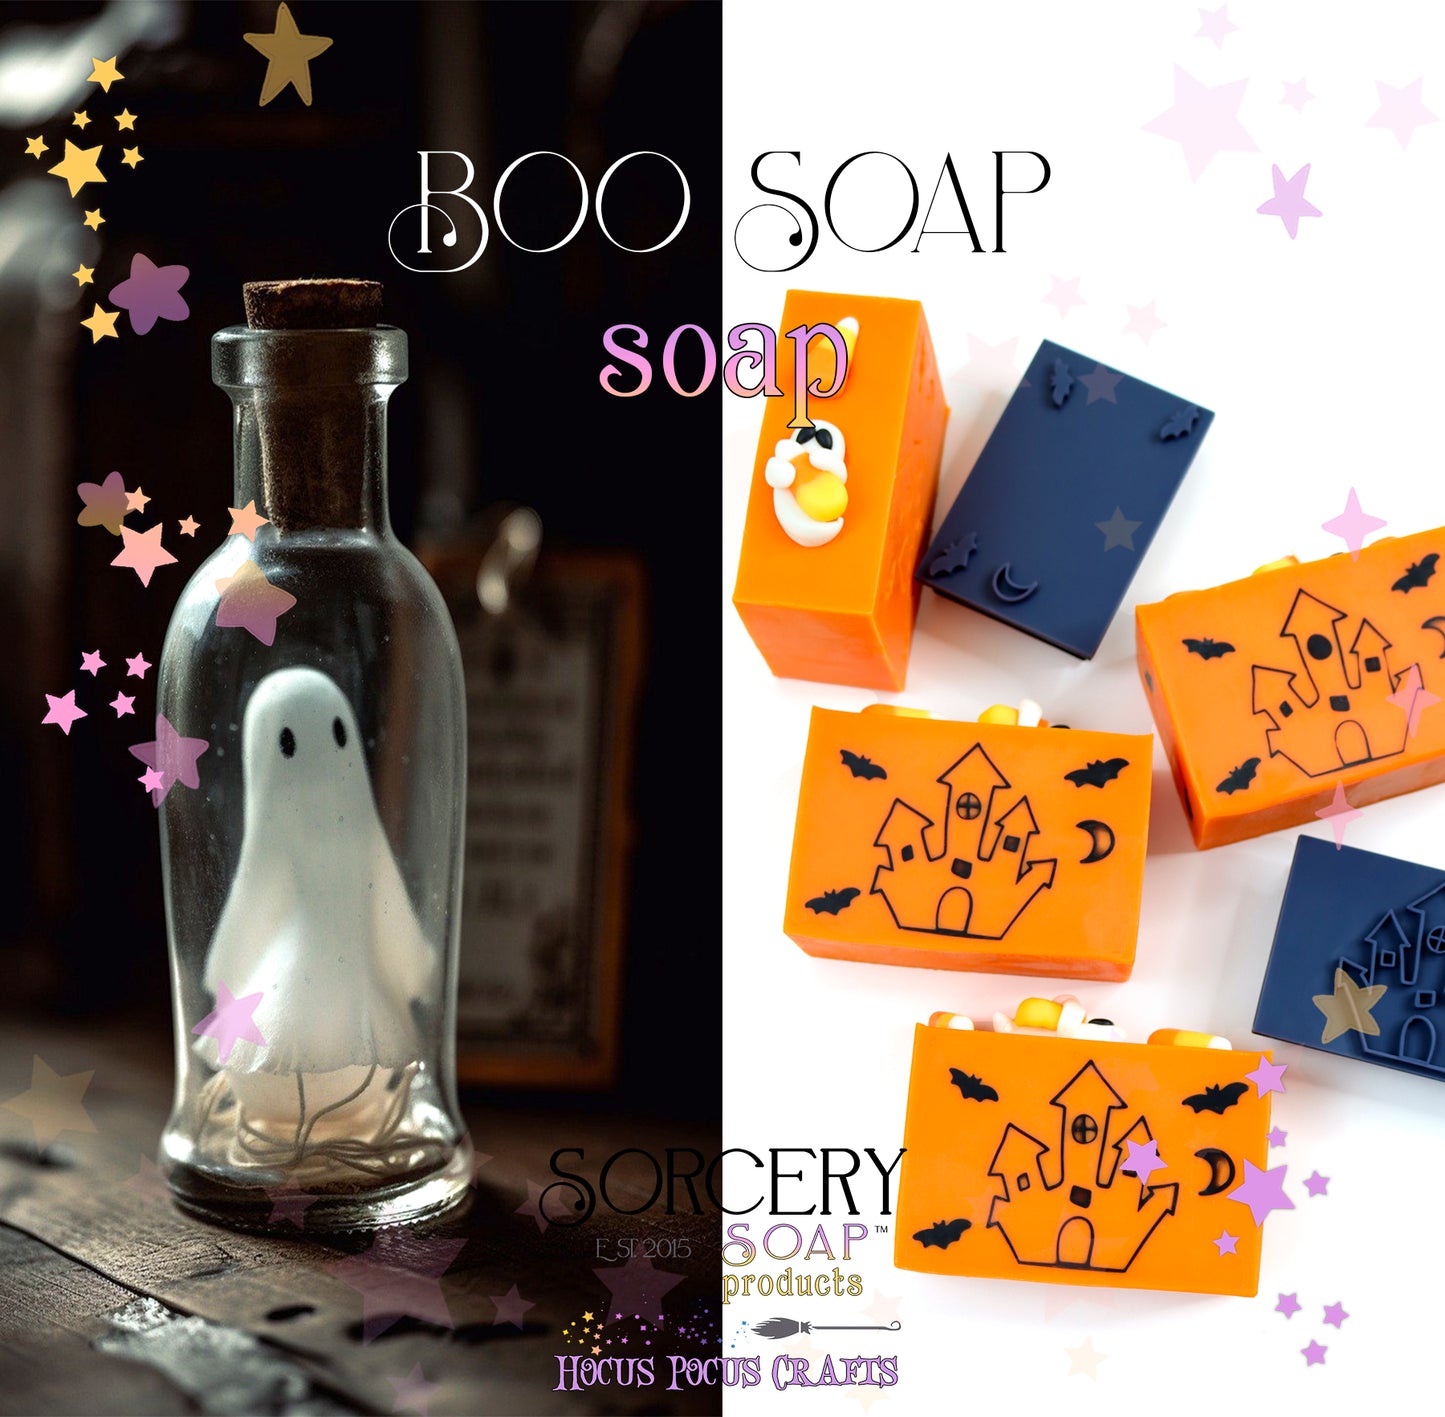 Boo Soap